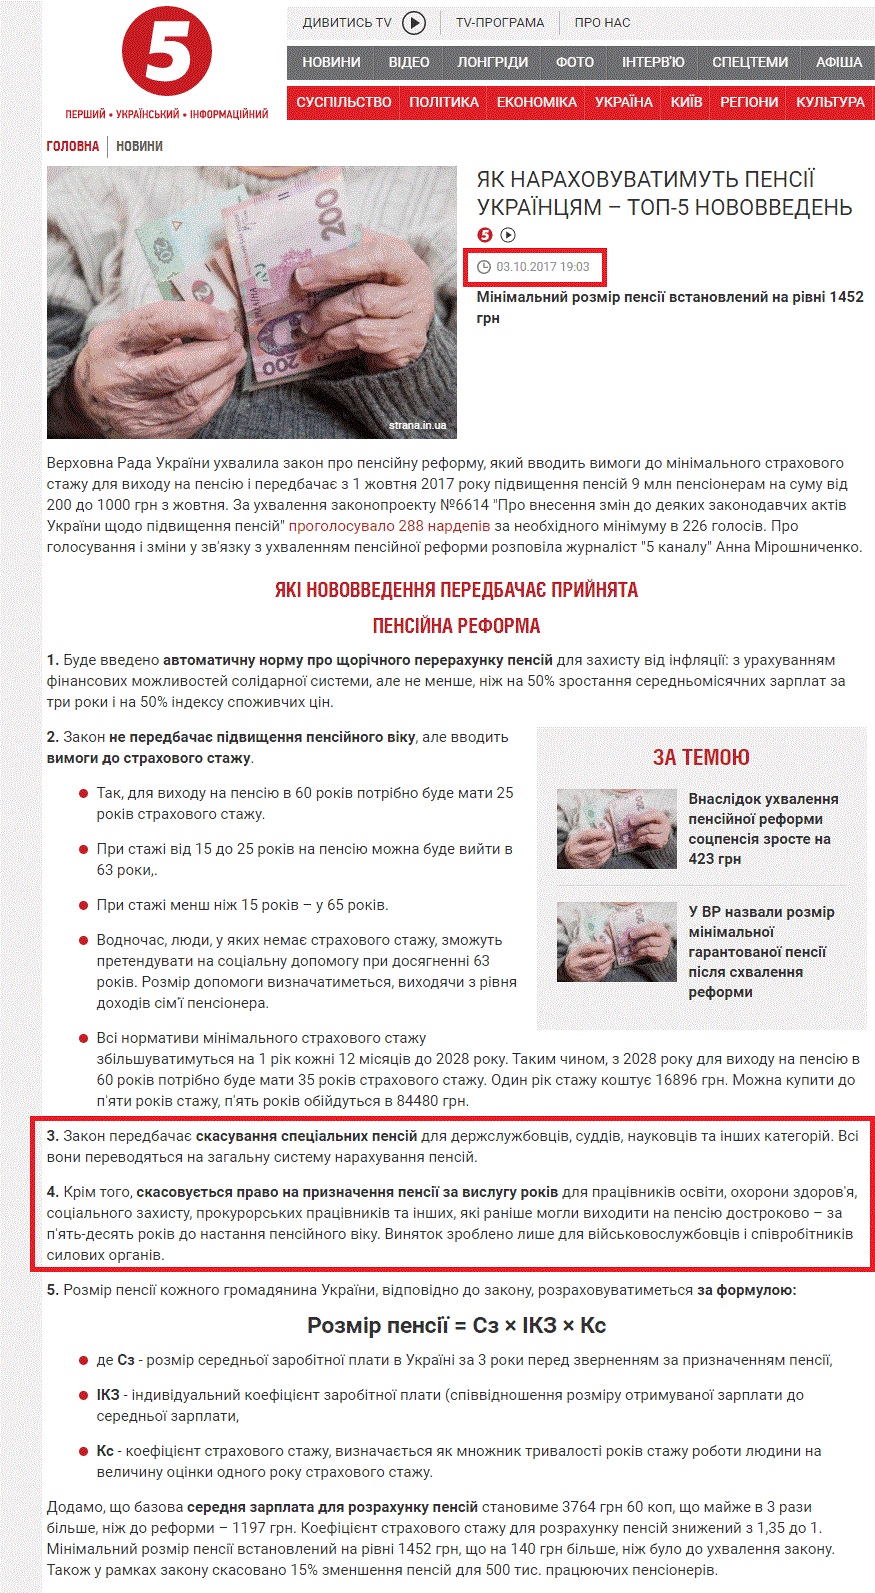 https://www.5.ua/suspilstvo/rada-pryiniala-pensiinu-reformu-shcho-zminytsia-dlia-ukraintsiv-156458.html